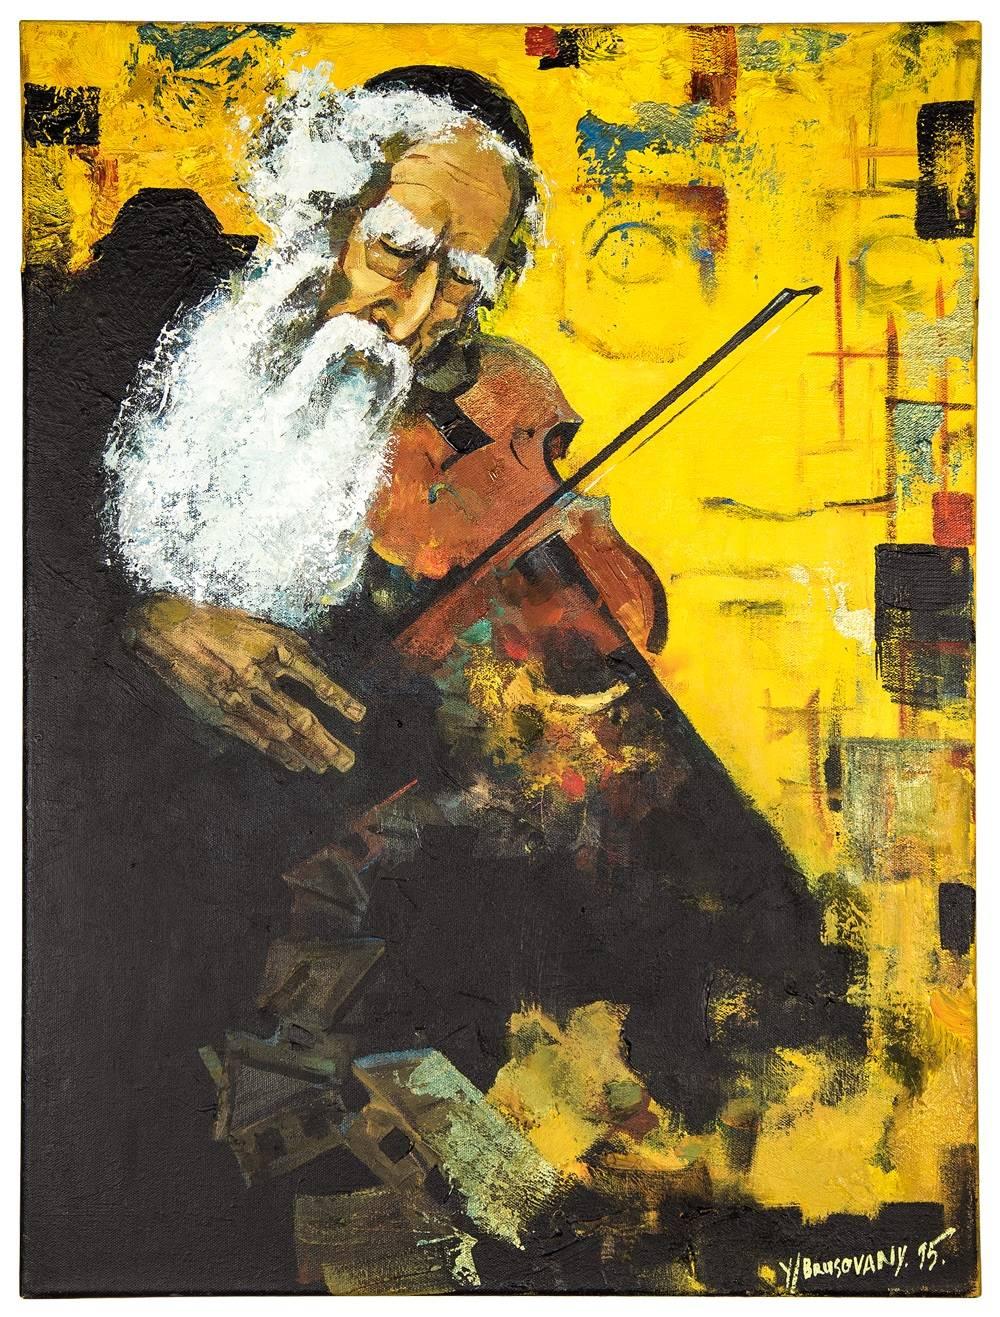 Figurative Painting Yuri Brusovany - Lapin juif d'avant-garde soviétique jouant du violon (le Klezmer Fiddler)